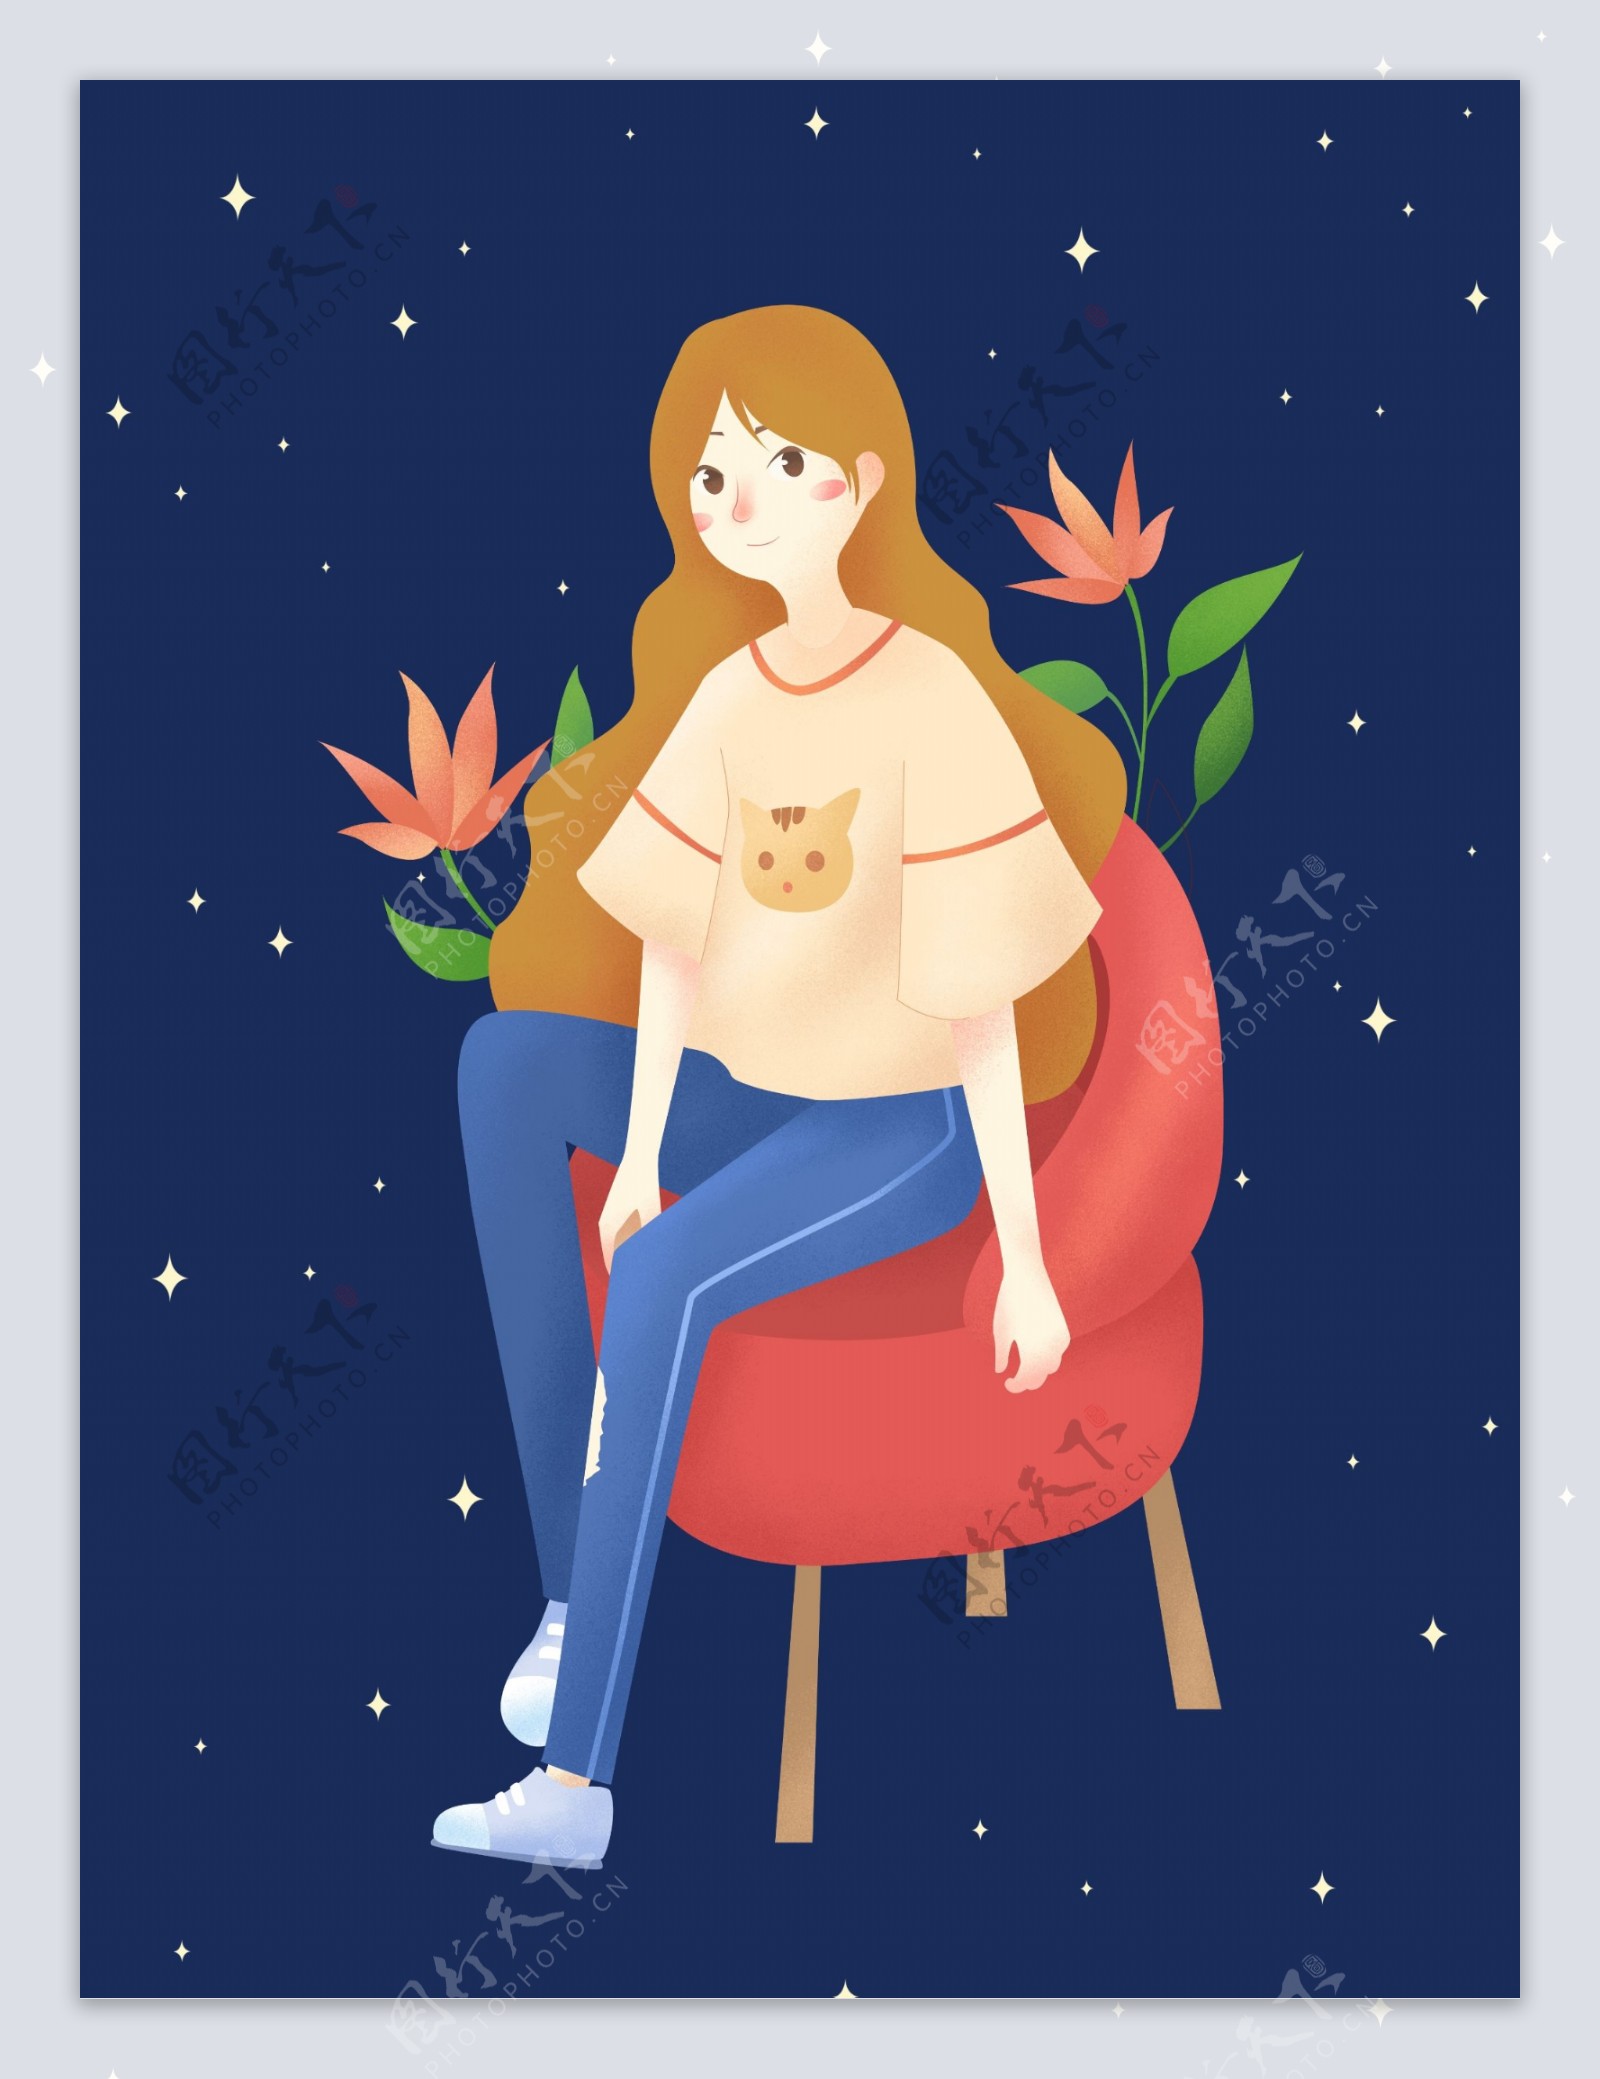 坐在椅子上的少女海报背景设计